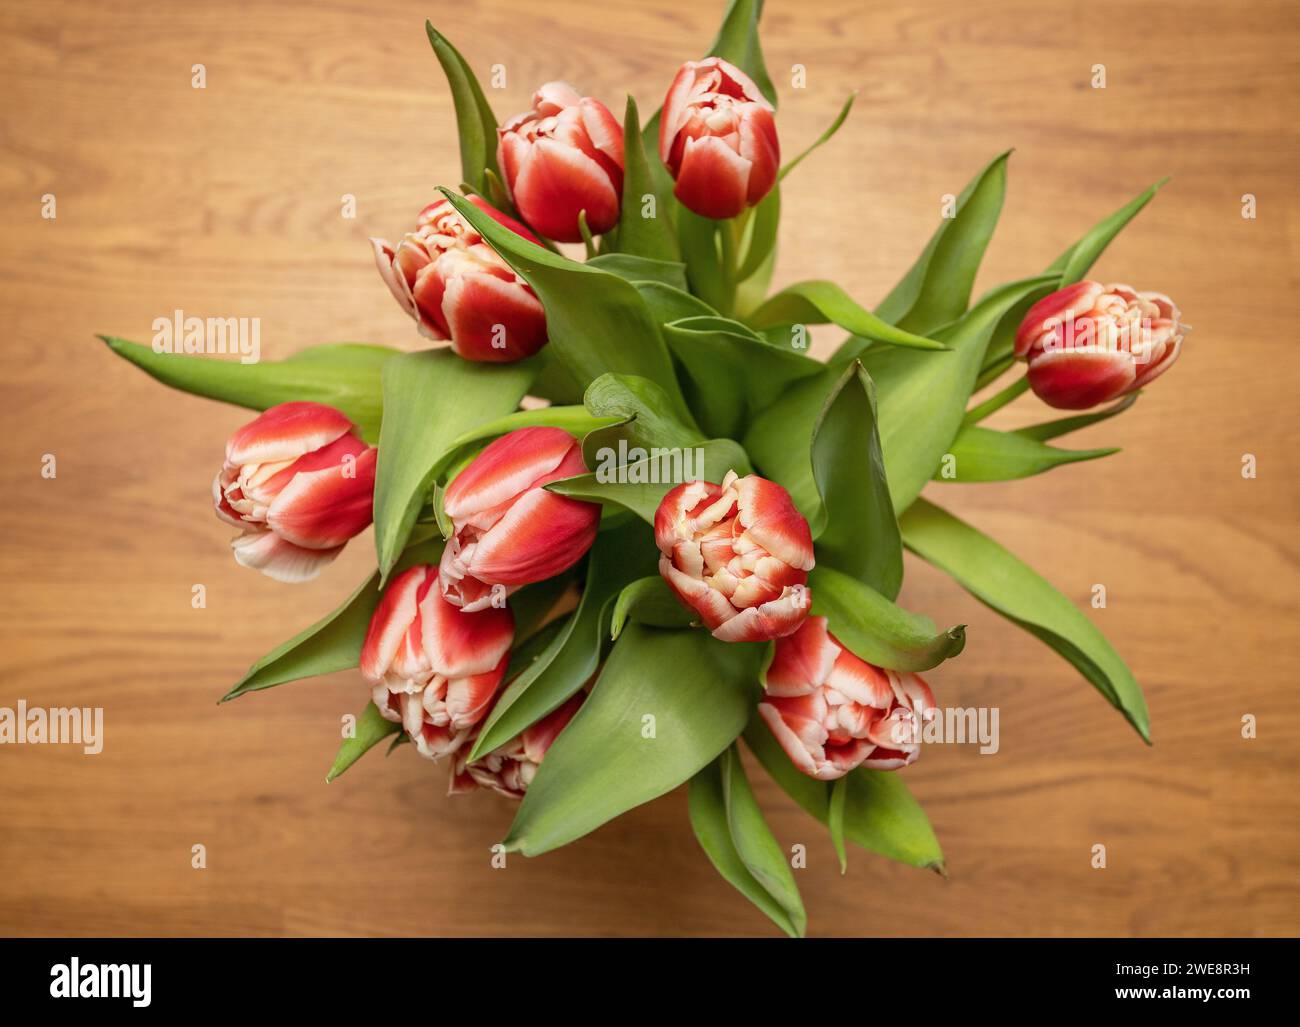 tulipani in vaso fotografati dall'alto. Decorazioni interne casalinghe su un tavolo in legno rustico. Foto: Bo Arrhed Foto Stock